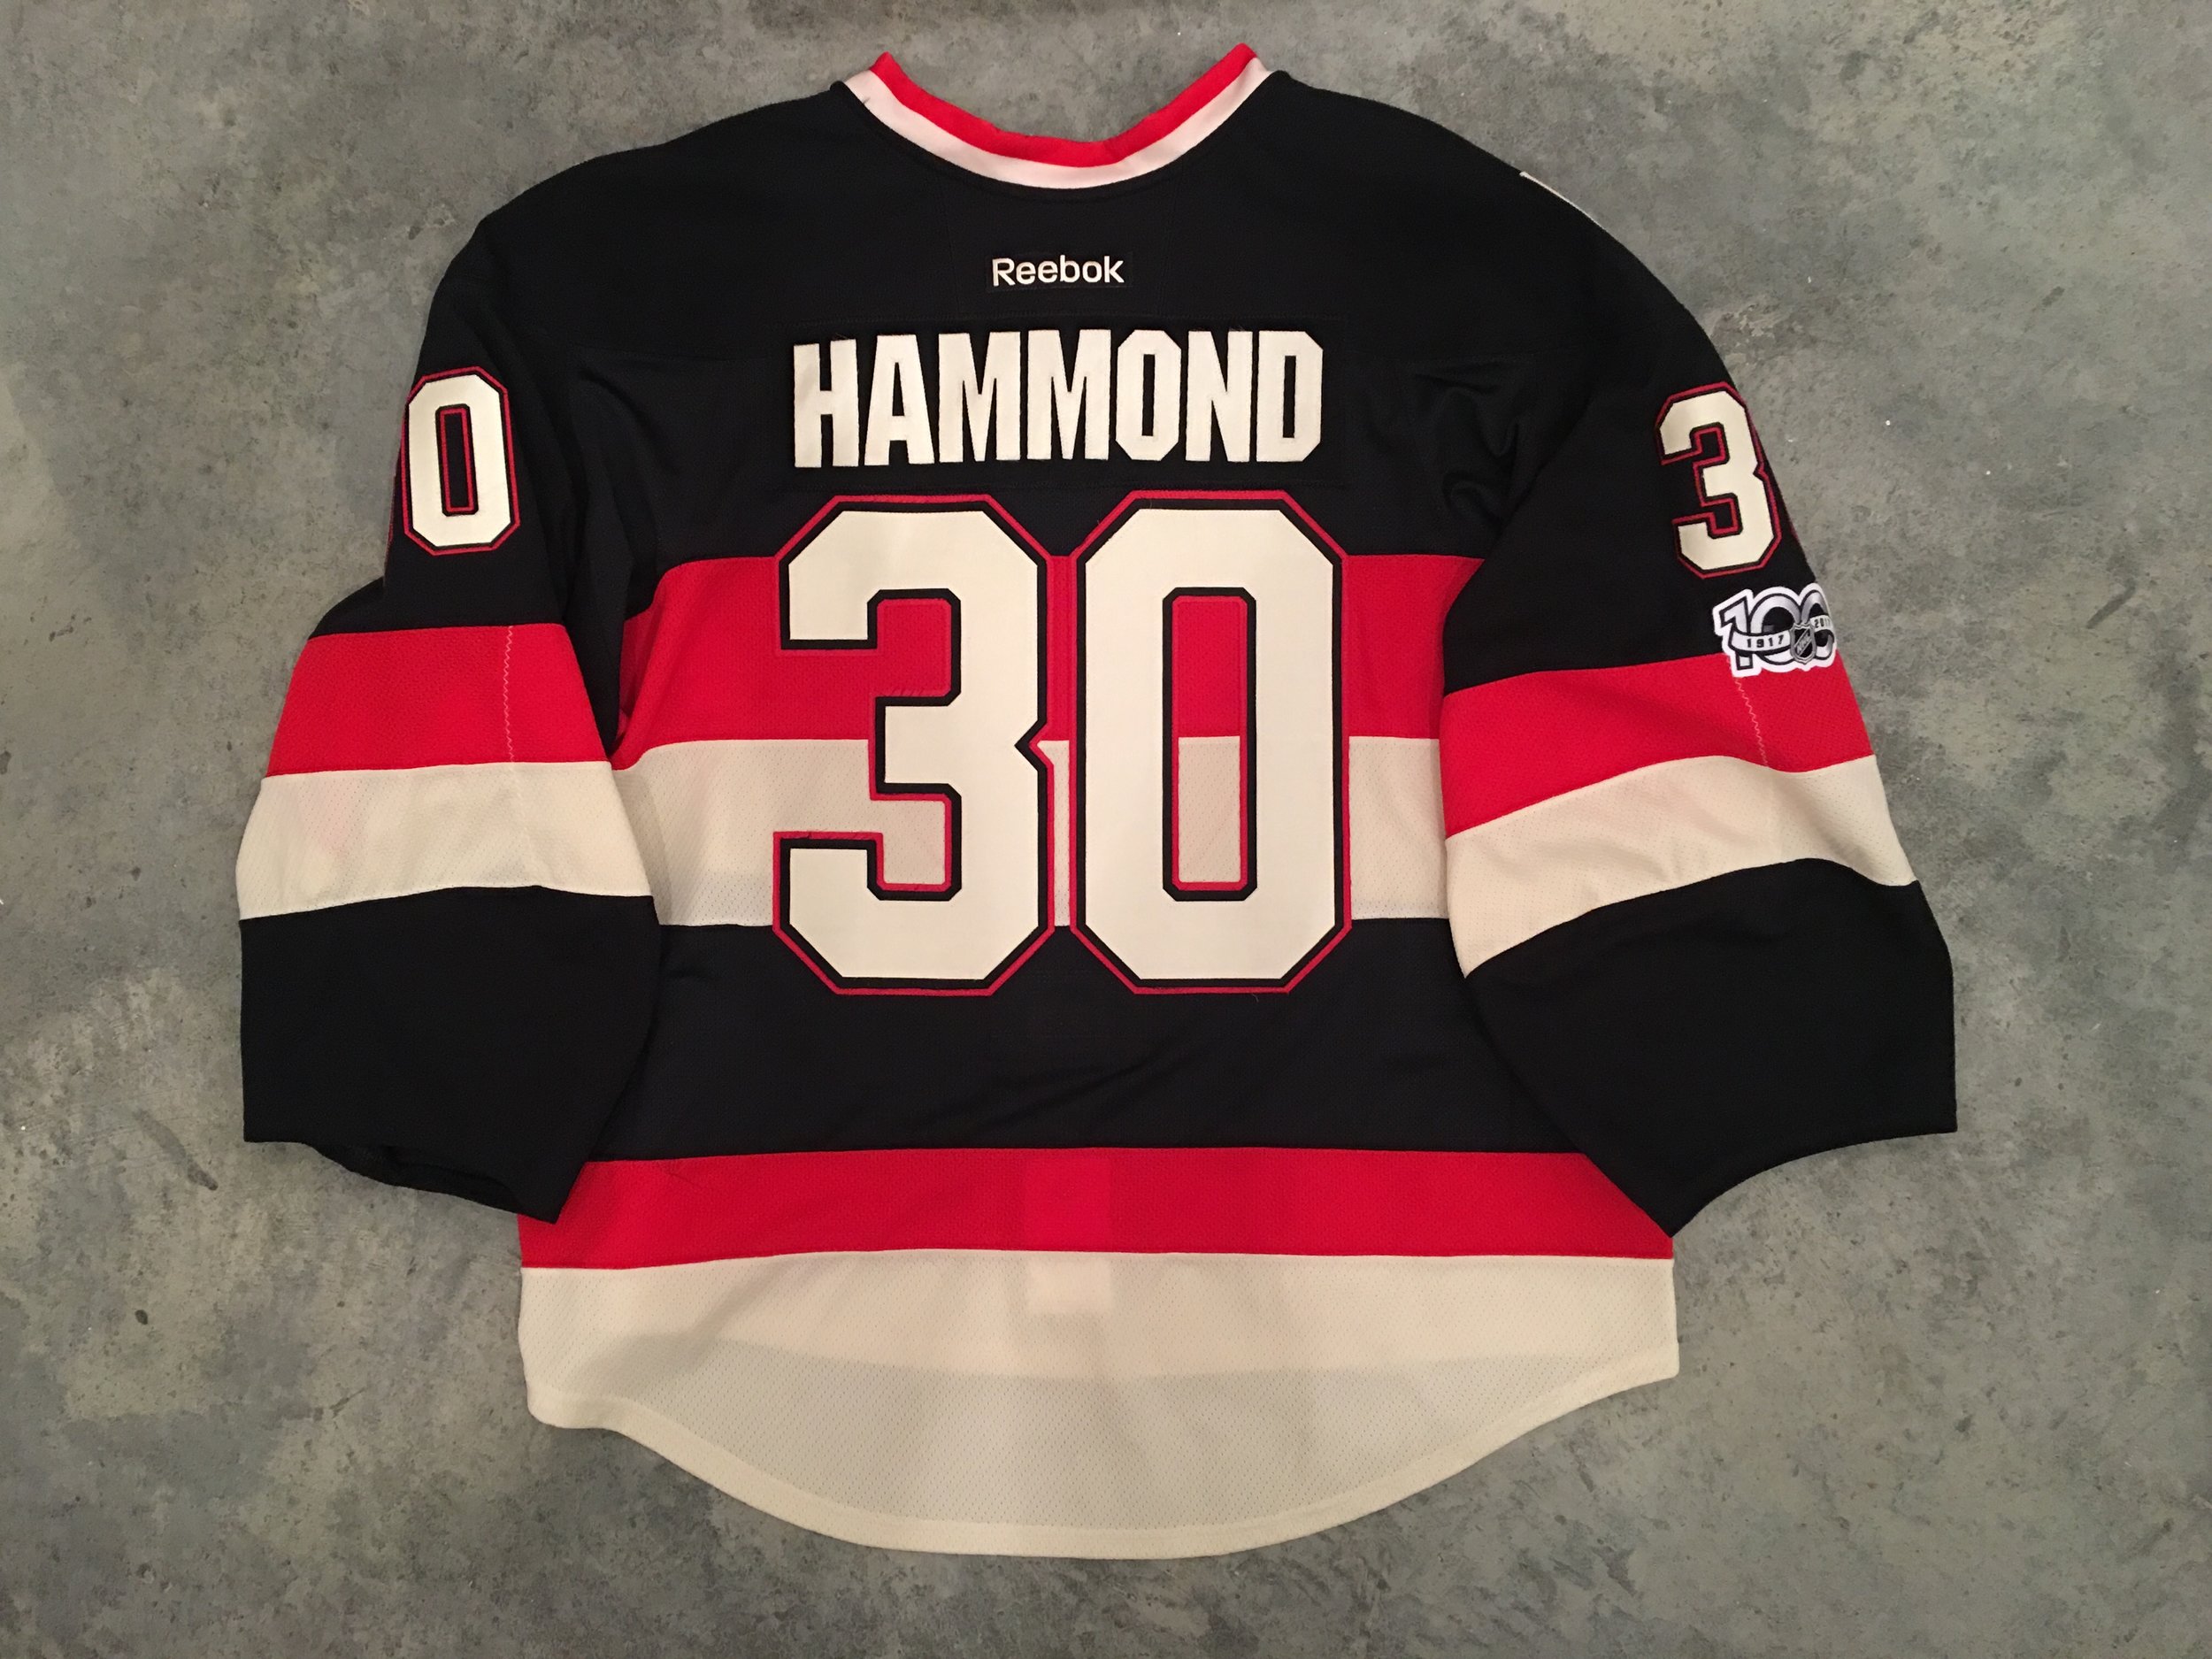 Ottawa Senators Heritage Classic jersey